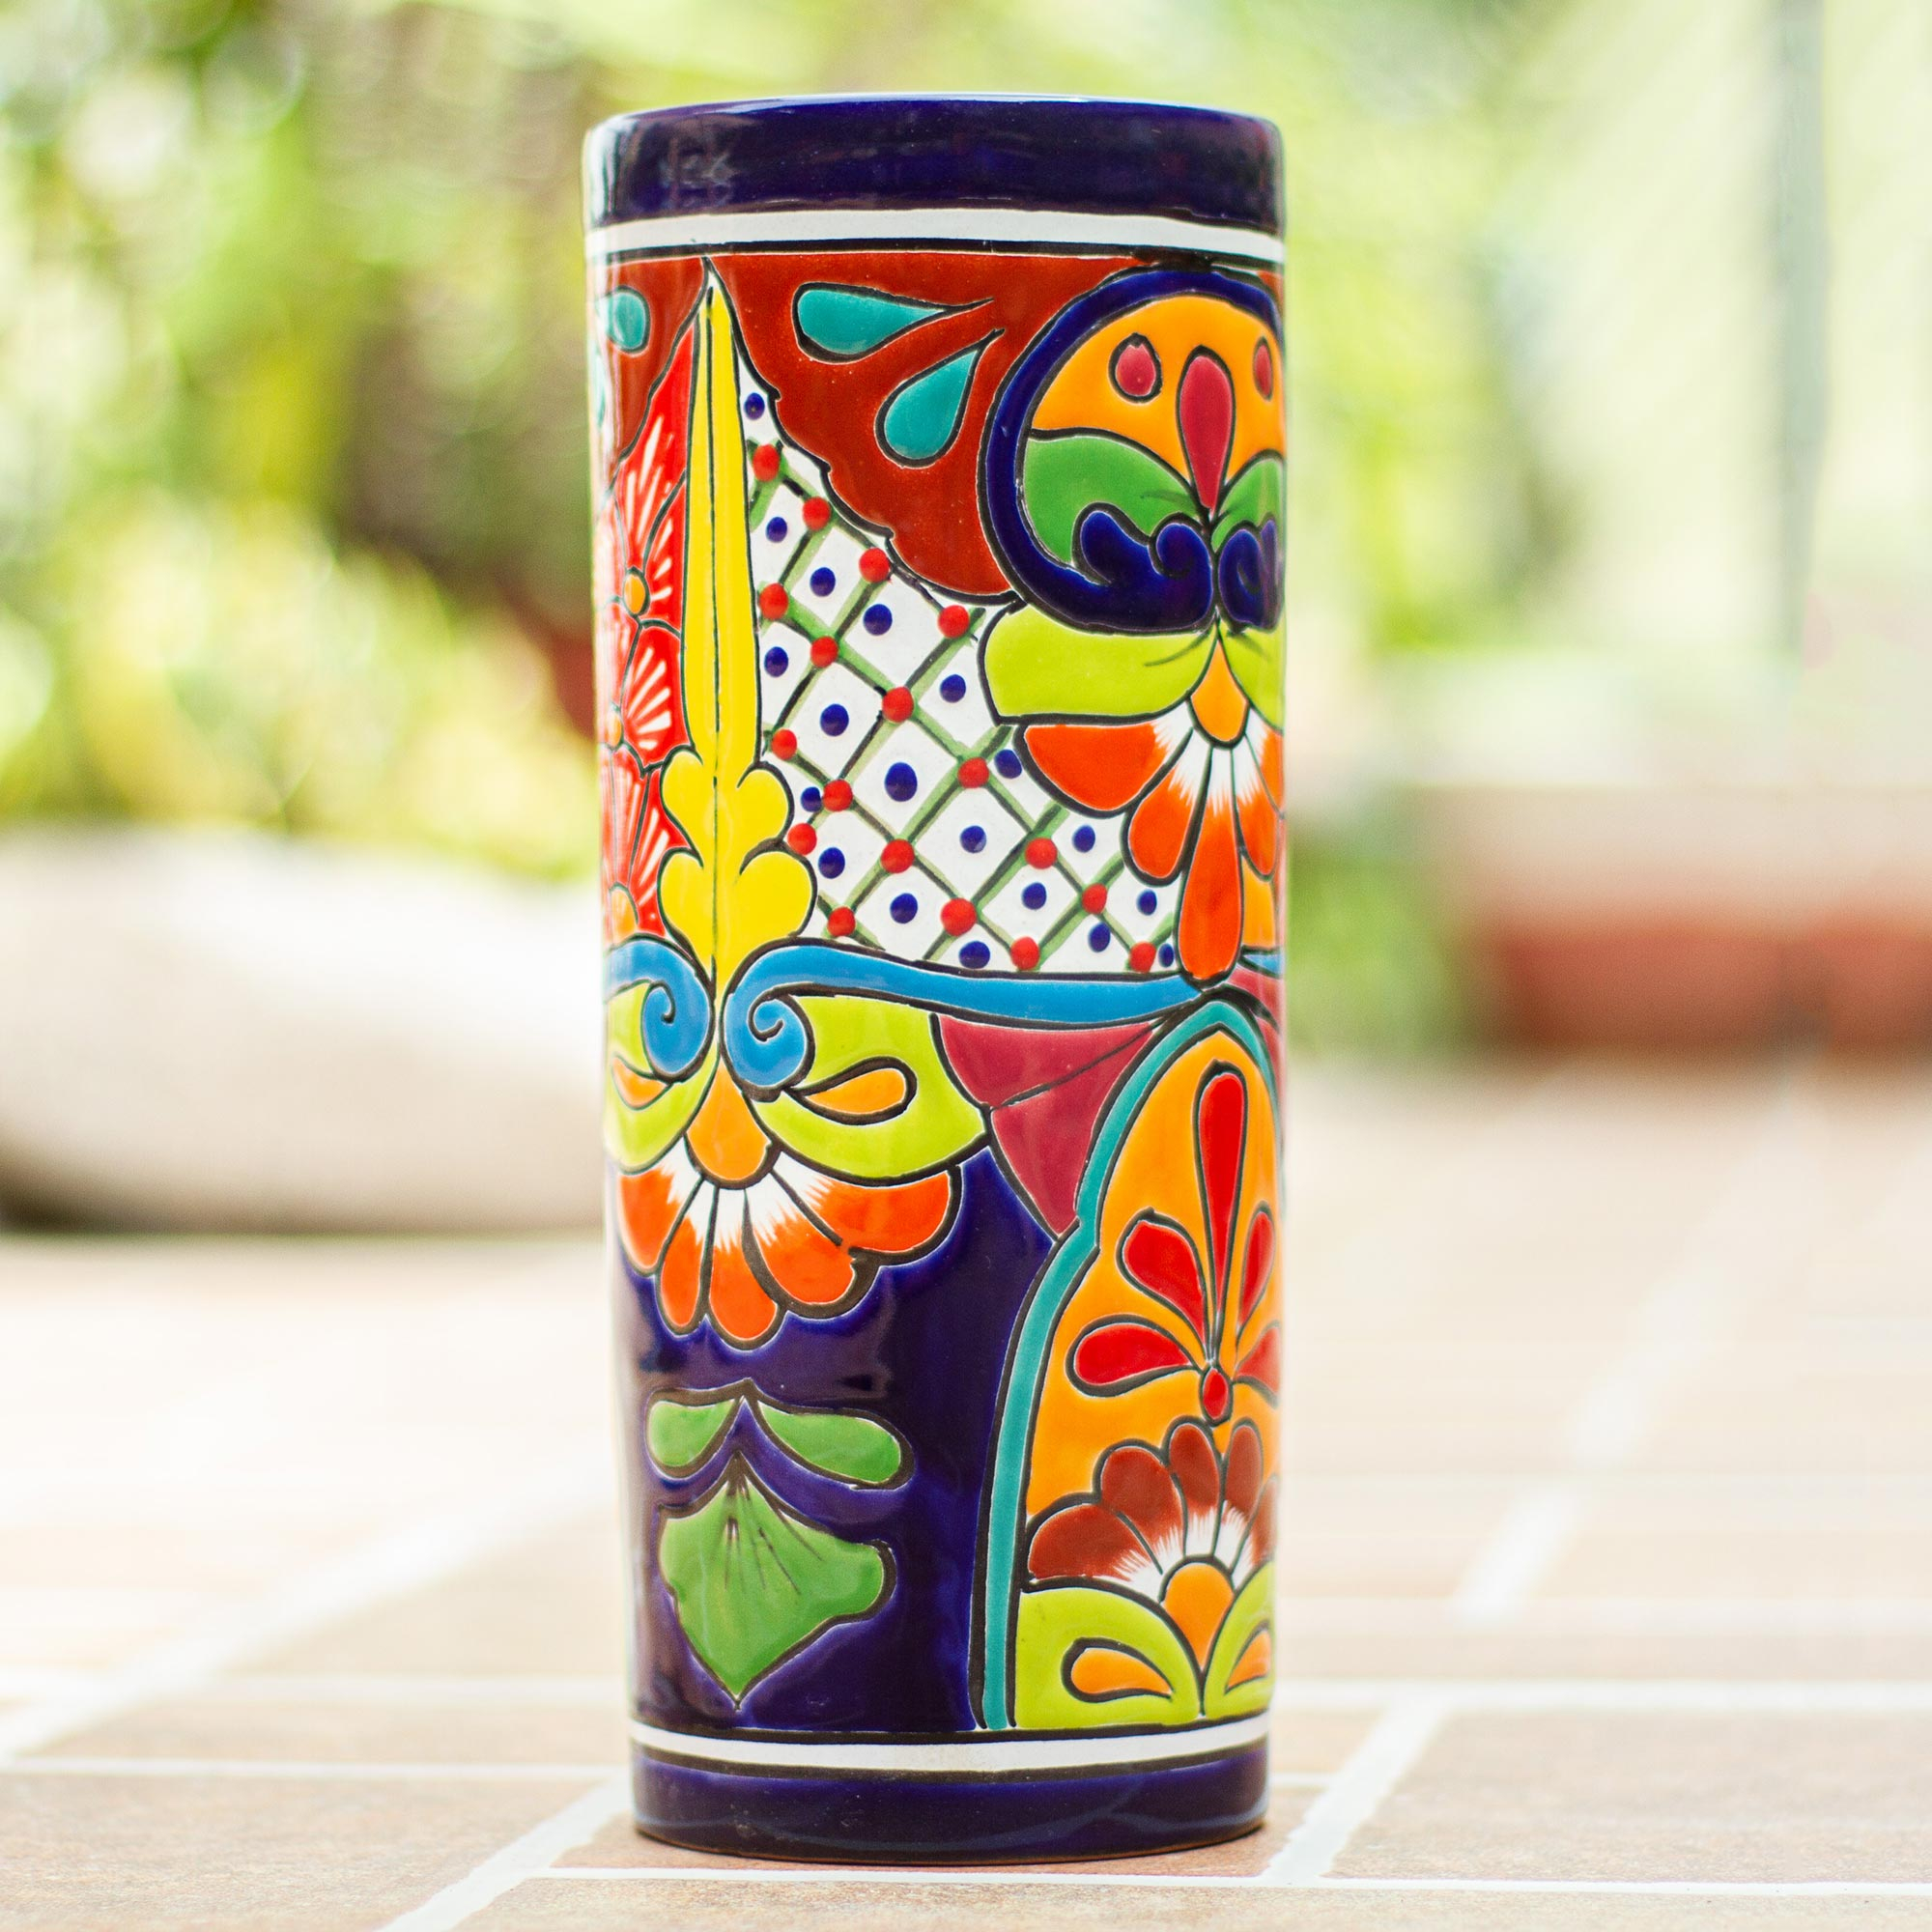 Handcrafted Talavera Hacienda Ceramic Tissue Box Cover - Classic  Convenience